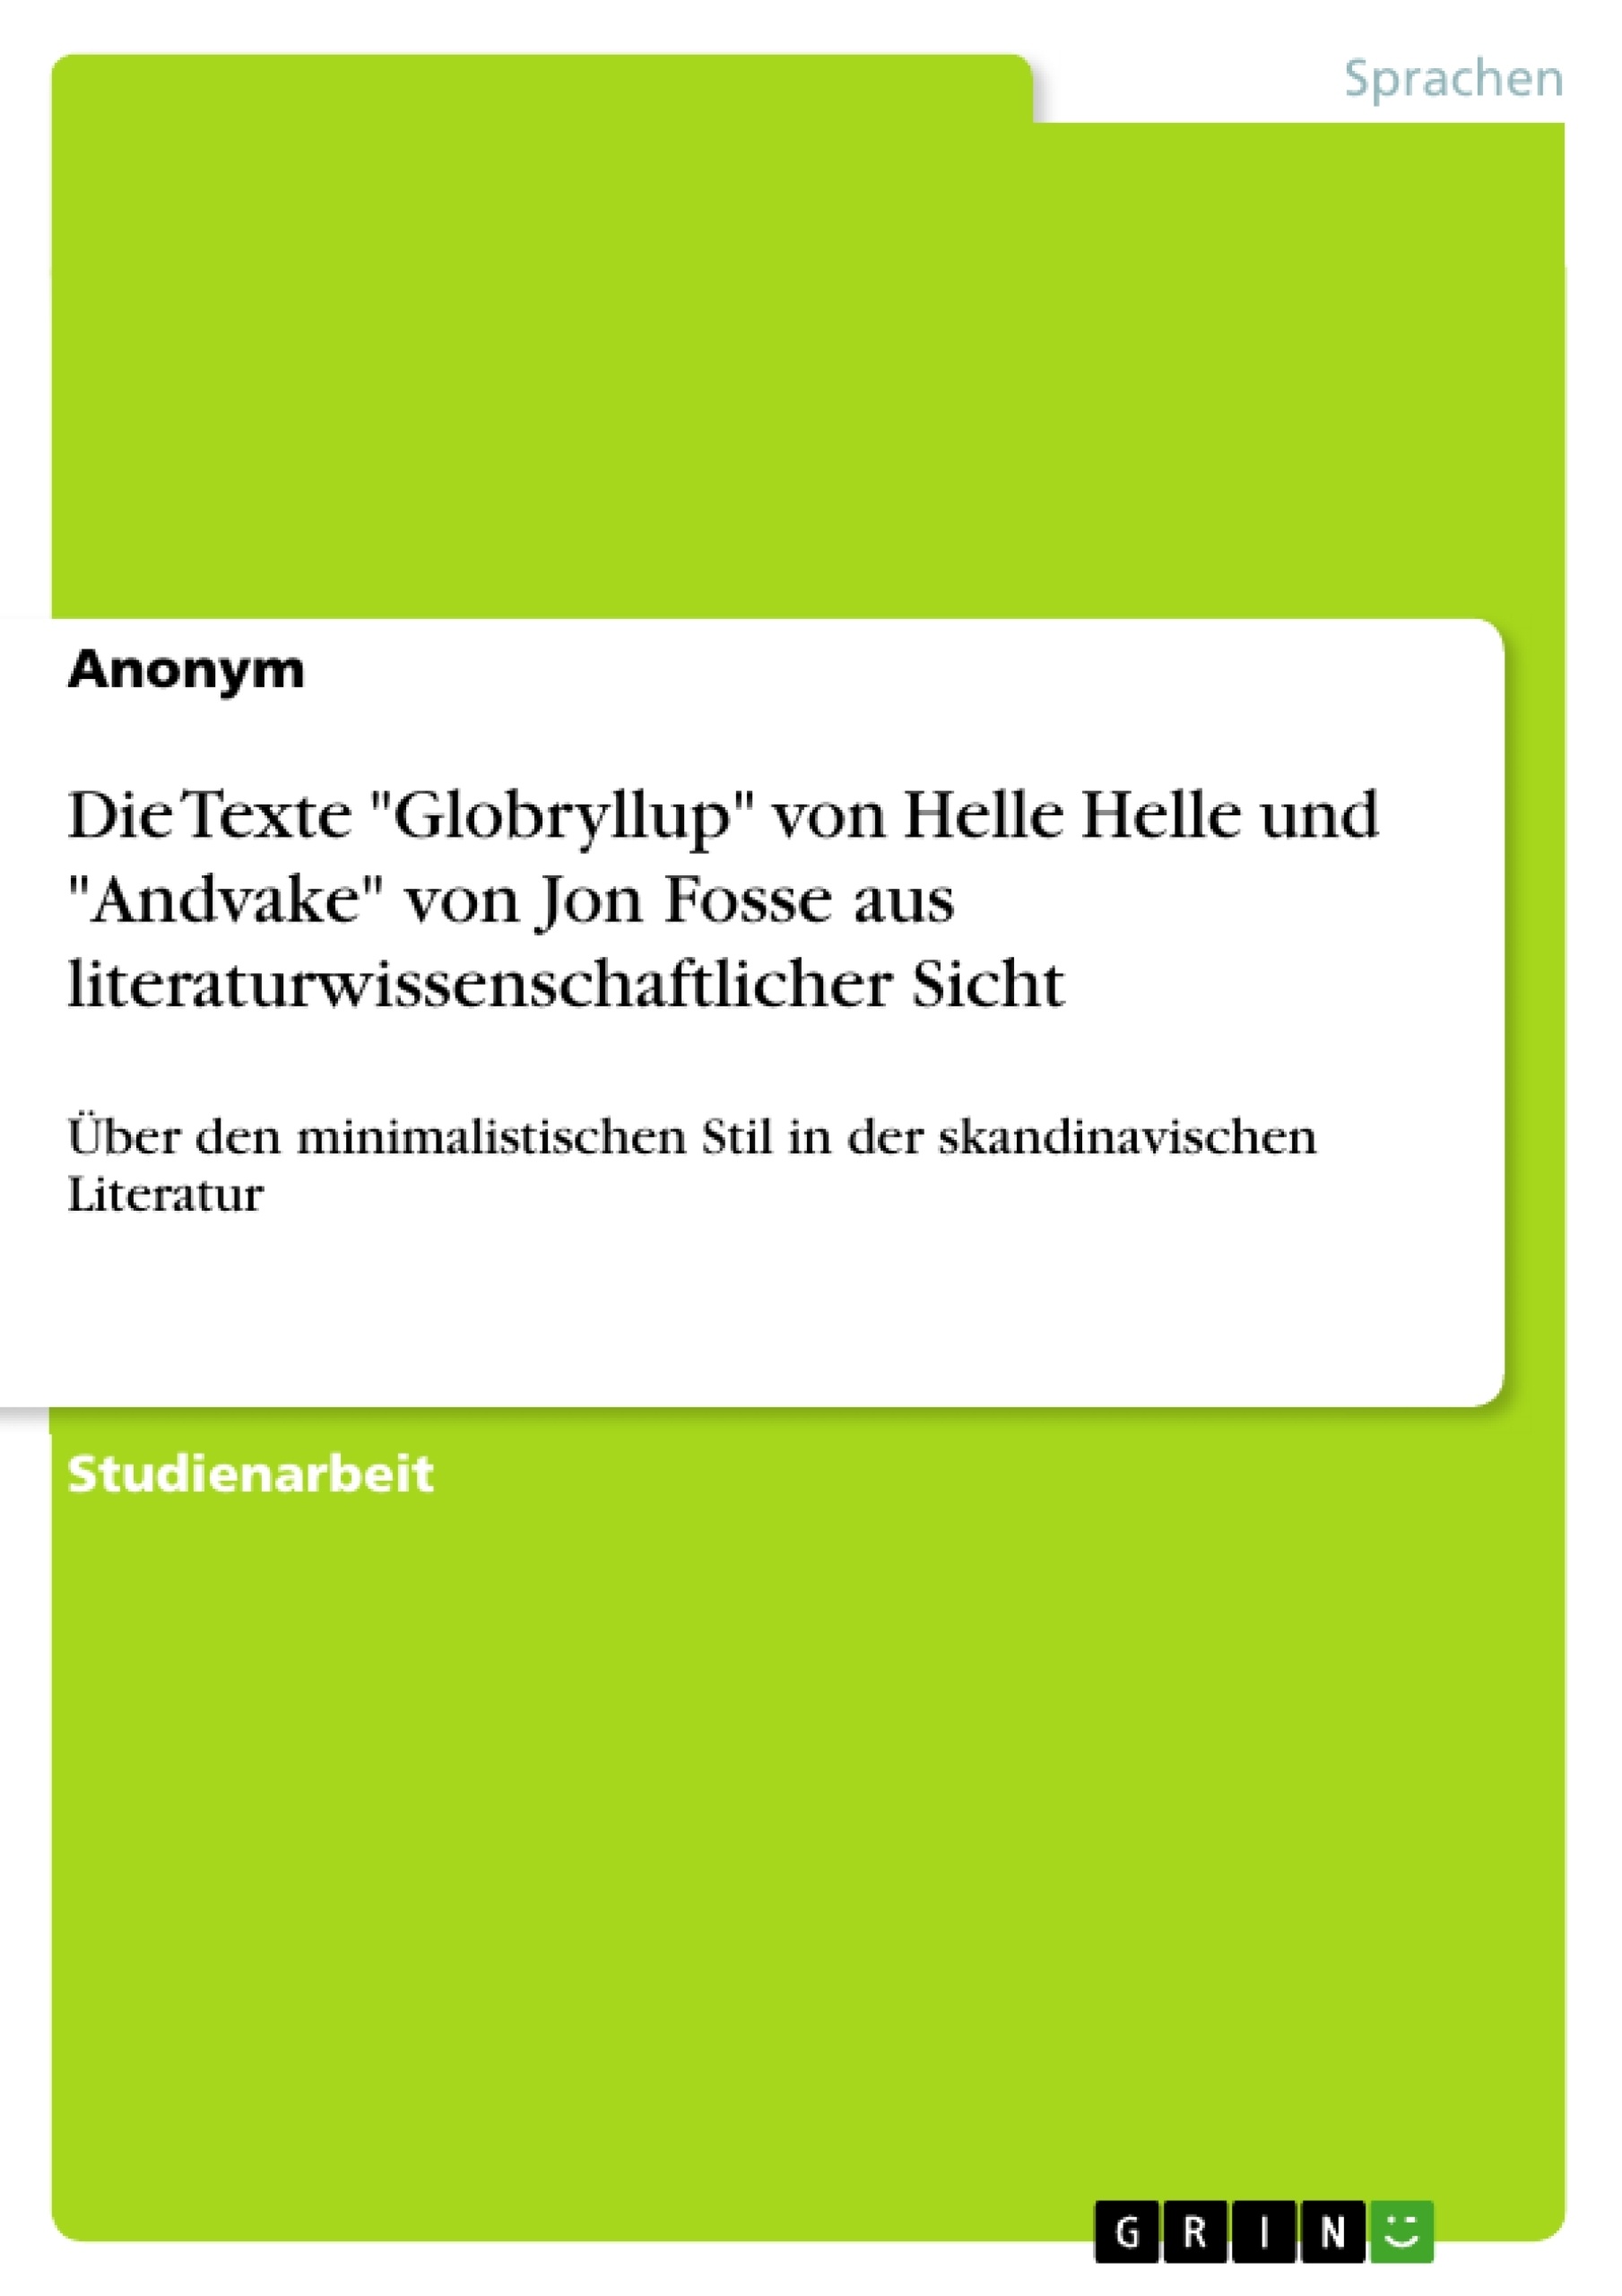 Título: Die Texte "Globryllup" von Helle Helle und "Andvake" von Jon Fosse aus literaturwissenschaftlicher Sicht